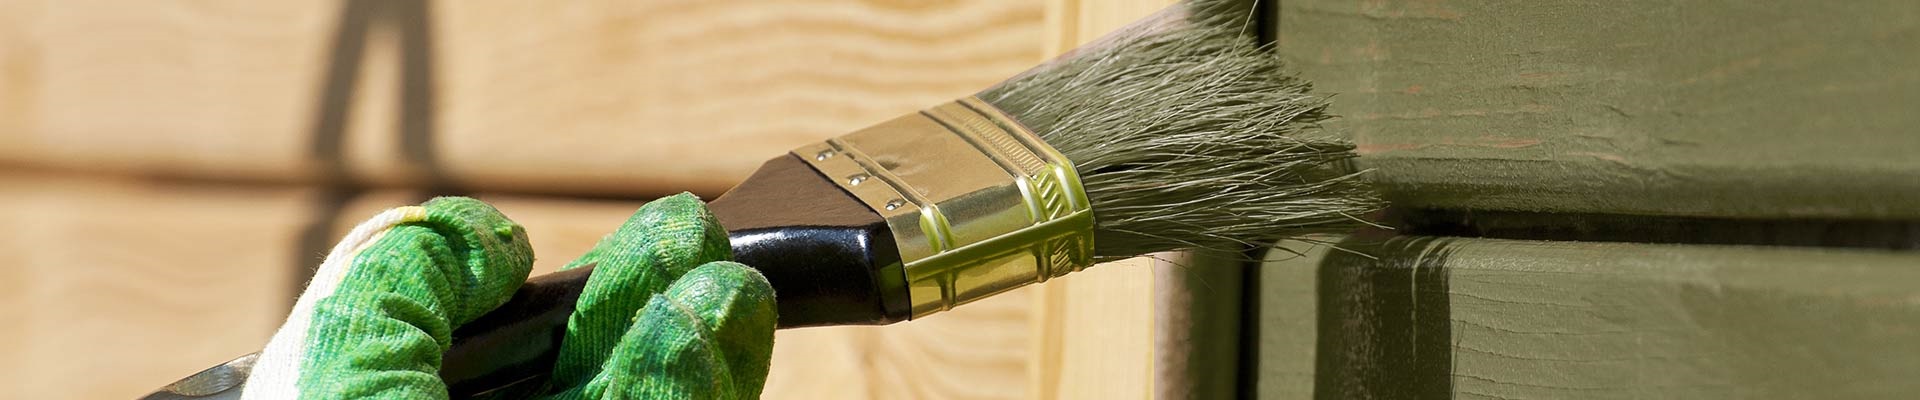 exterior-home-painter-houston-texas